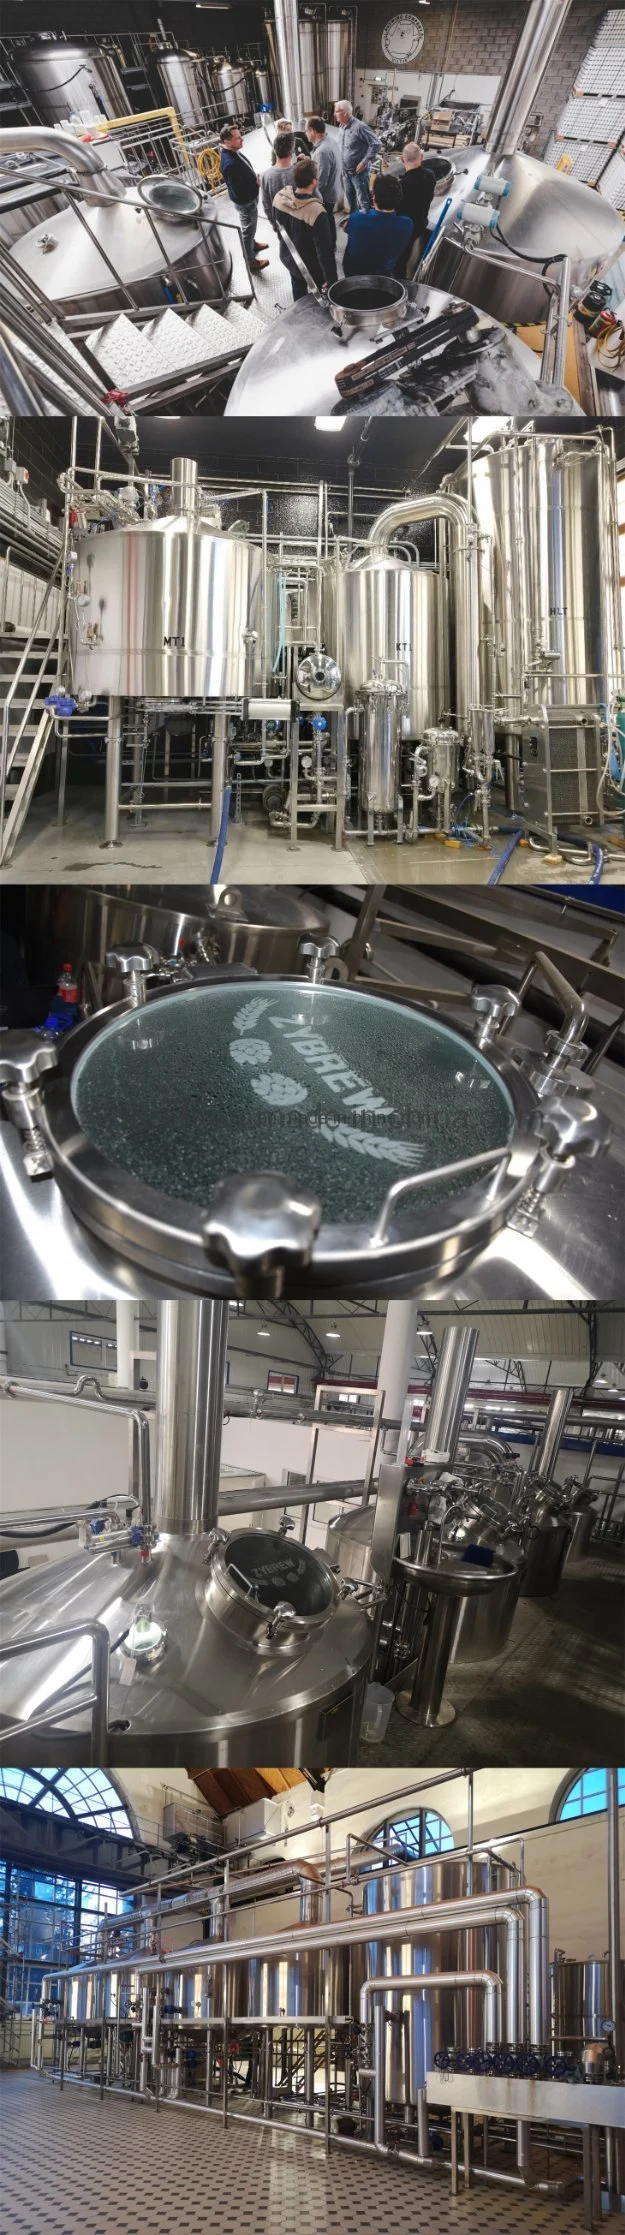 100L 200L 300L 500L 700L 1000L 2000L Steel Brewing Micro Craft Beer Brewery Equipment